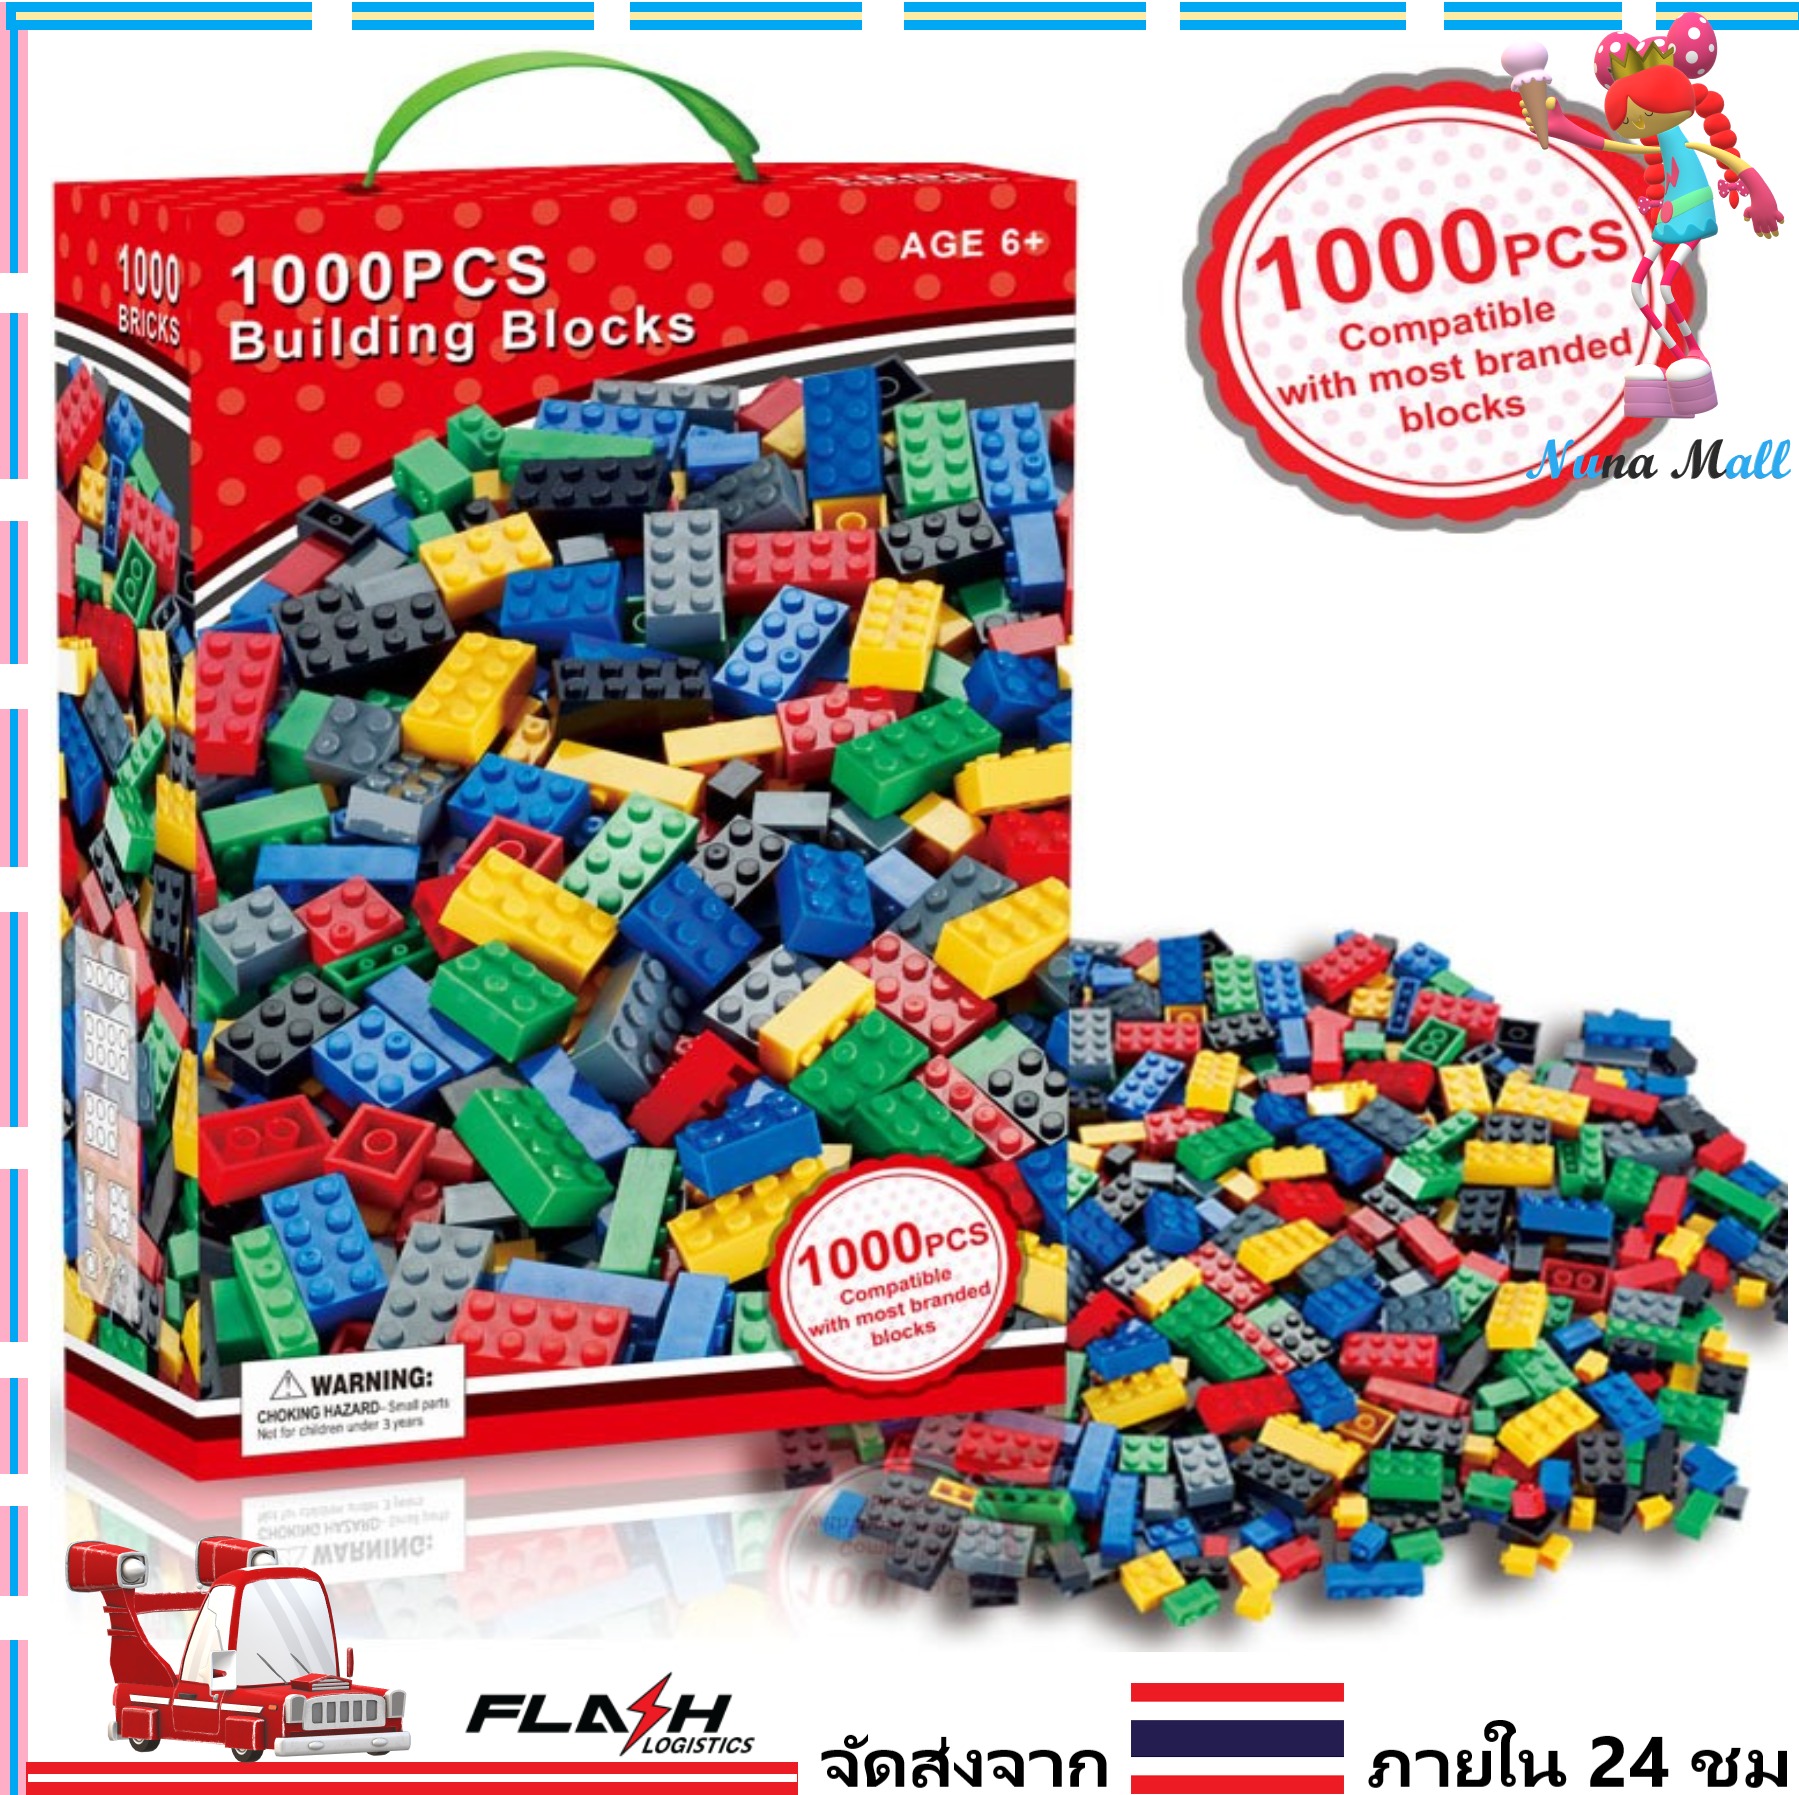 ตัวต่อ บล็อกต่อ บล็อคtoy building Blocks   ของเล่น1000 ชิ้น คละแบบ คละสี ประกอบตามจินตนาการ สำหรับเด็กอายุ 6 ปีขึ้นไป （Nuna Mall)  baby toys